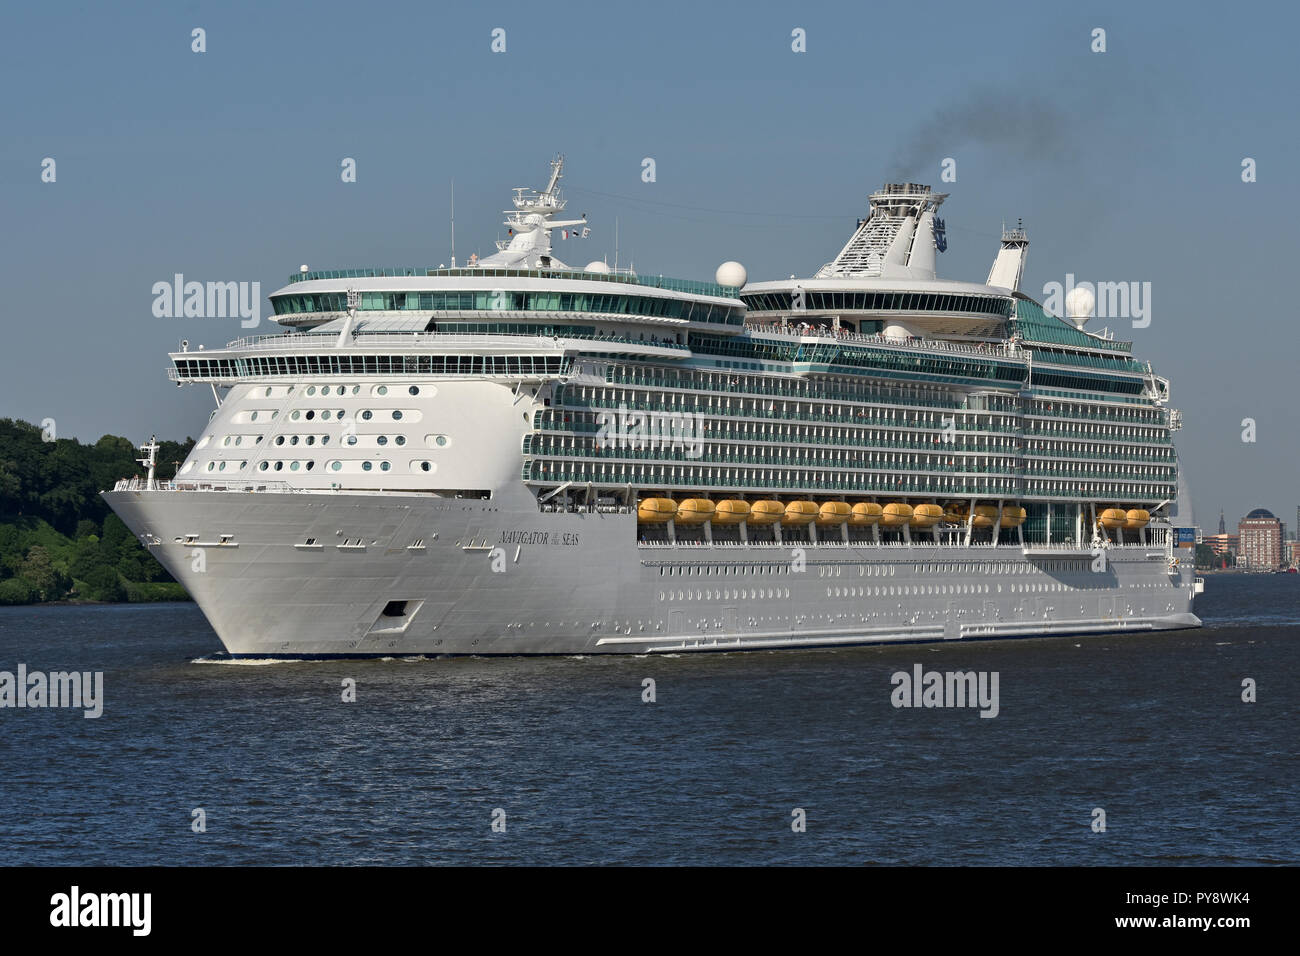 Navigator of the seas immagini e fotografie stock ad alta risoluzione -  Alamy